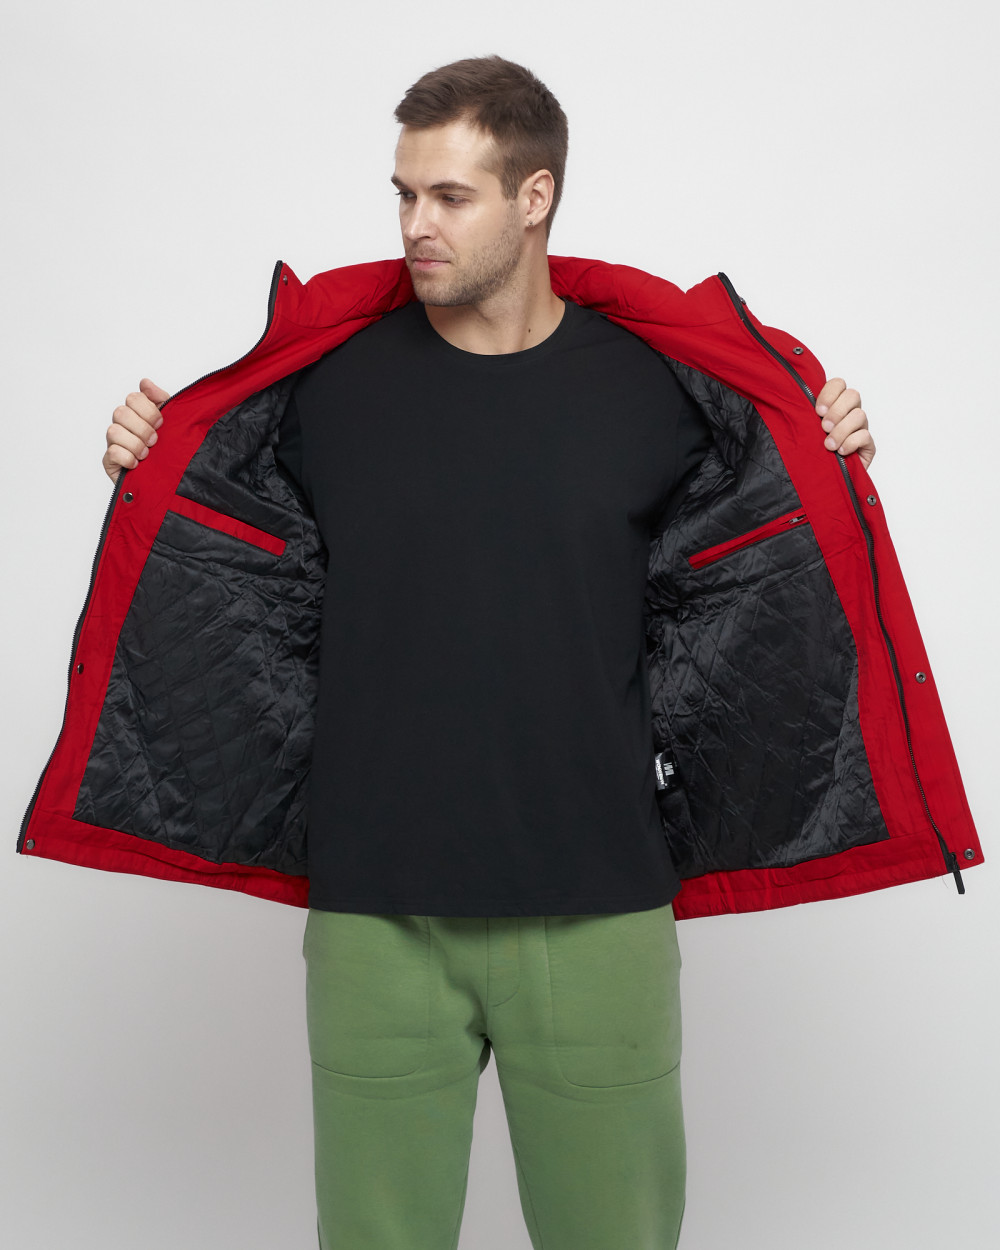 Купить куртку мужскую большого размера оптом от производителя недорого в Москве 8816TS 1